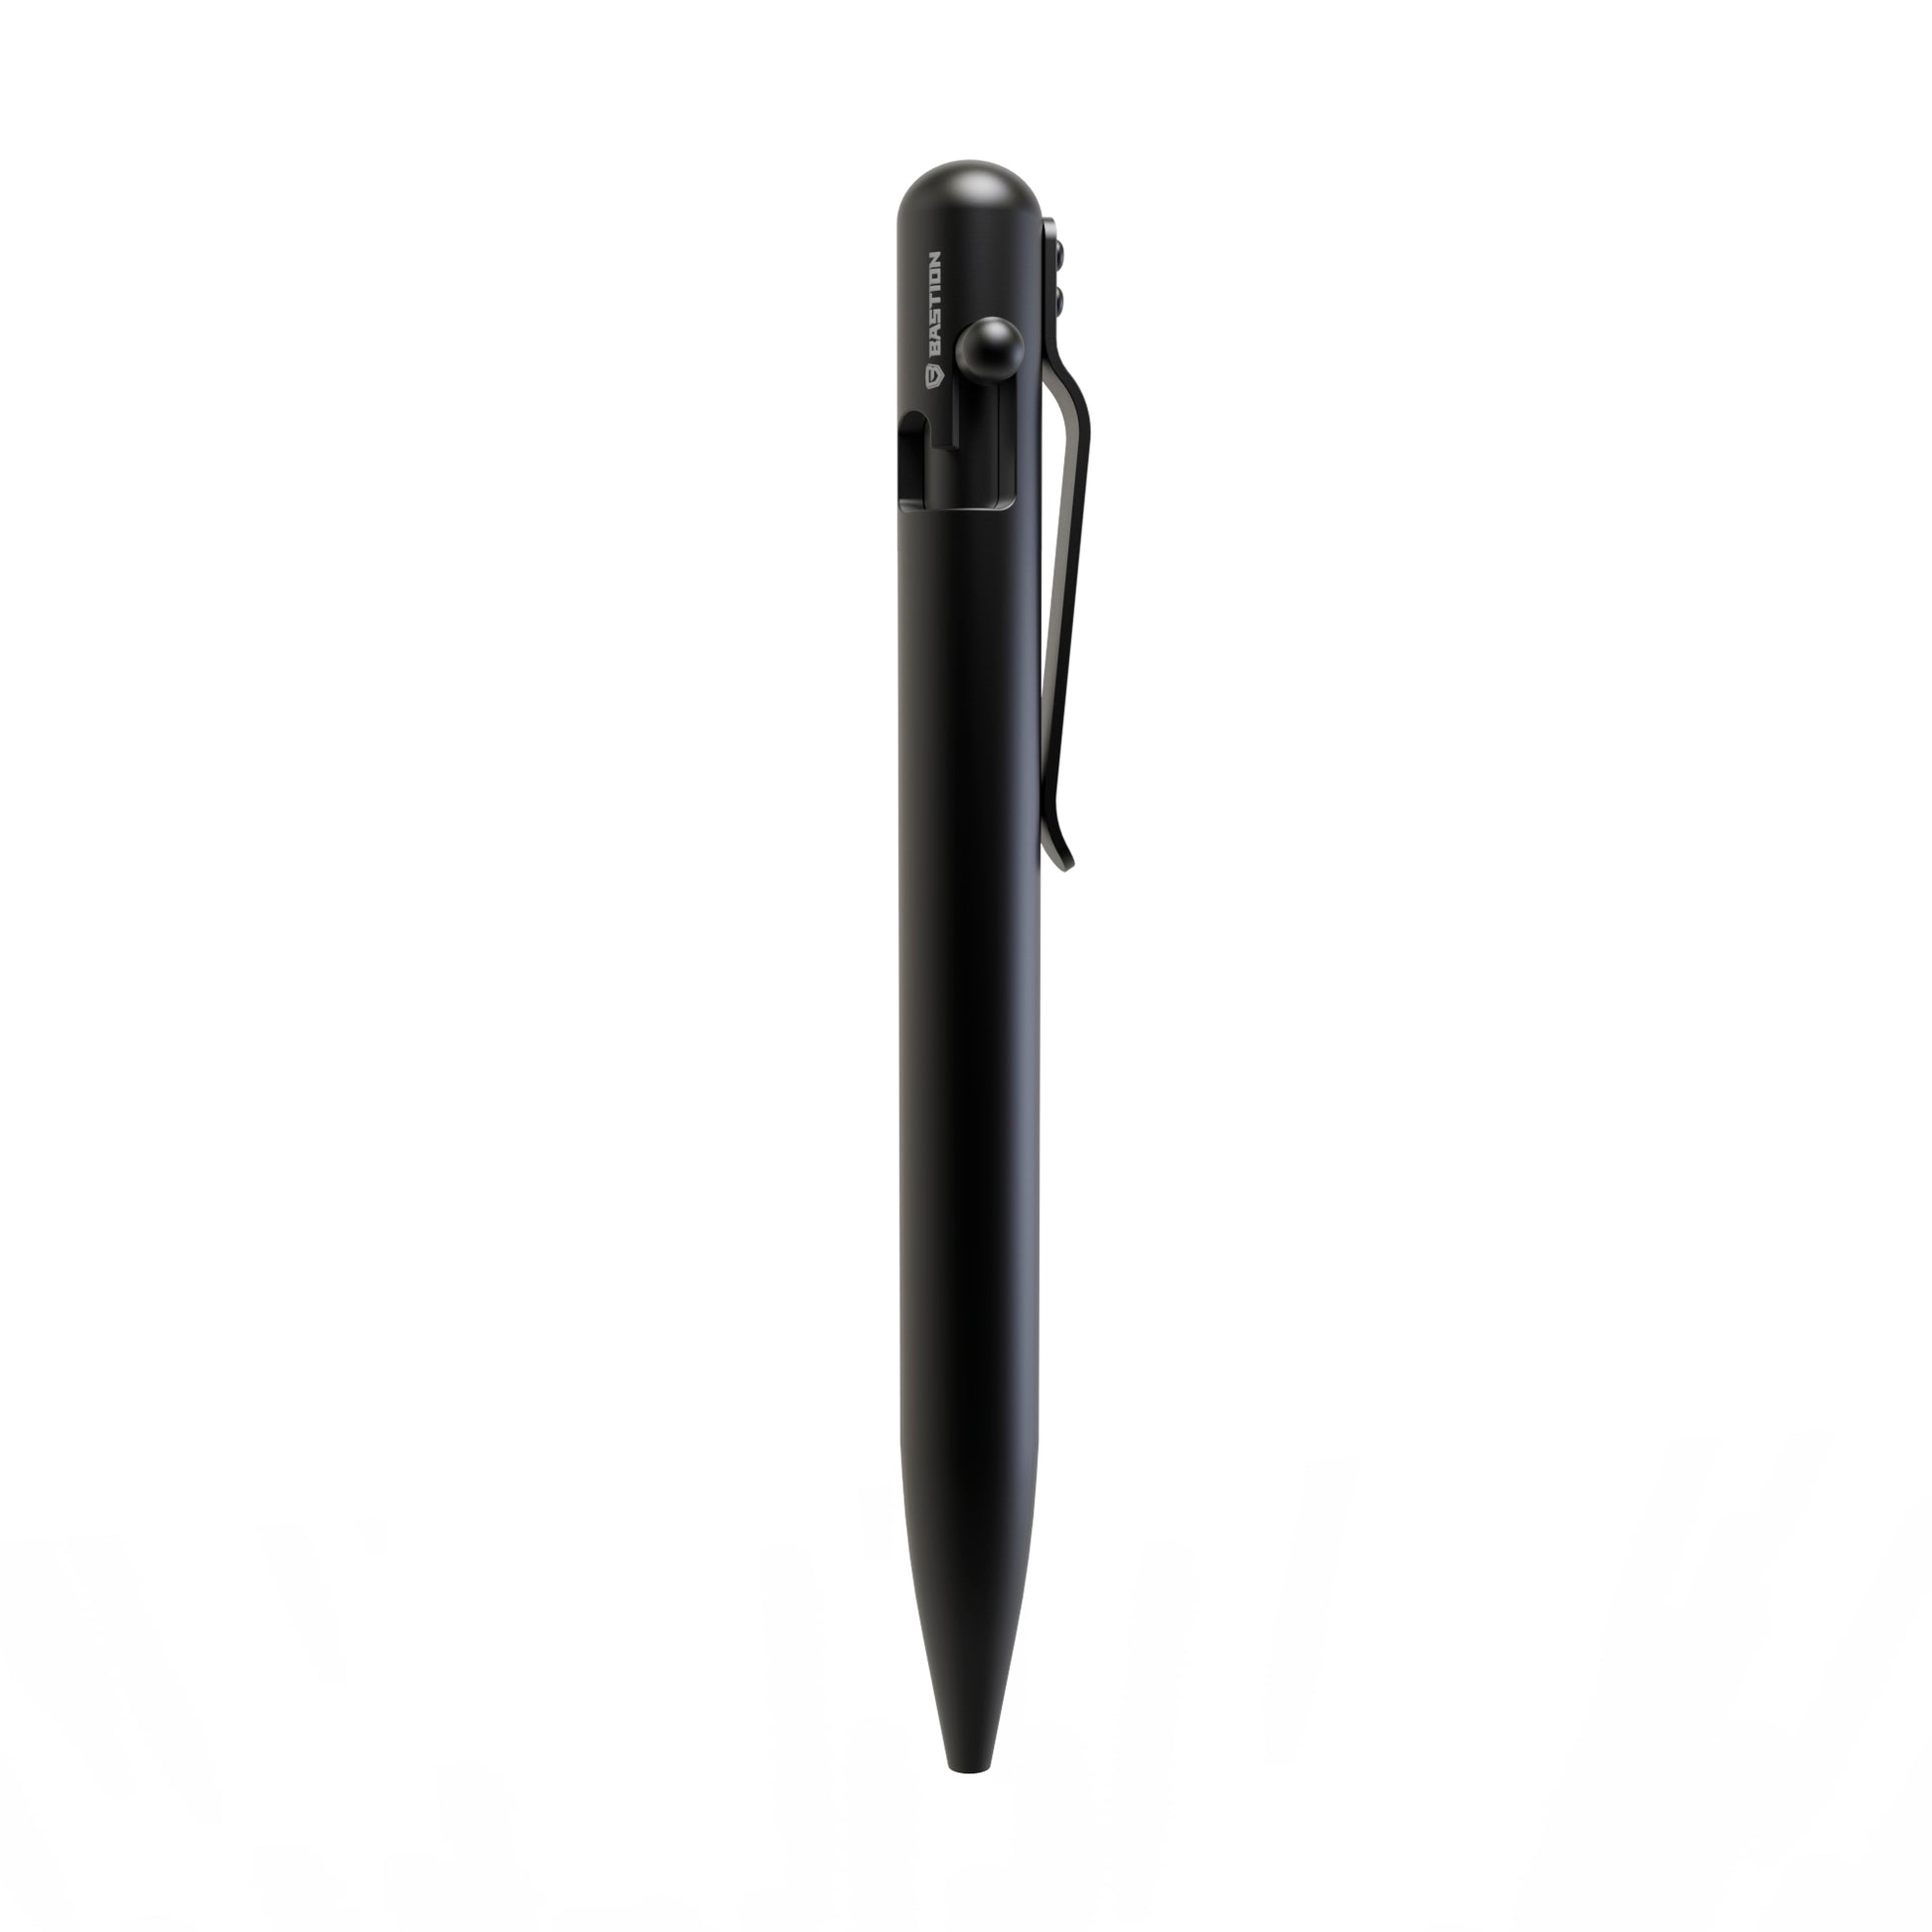 Big Idea Design  Pen Pocket Clip Maintenance 